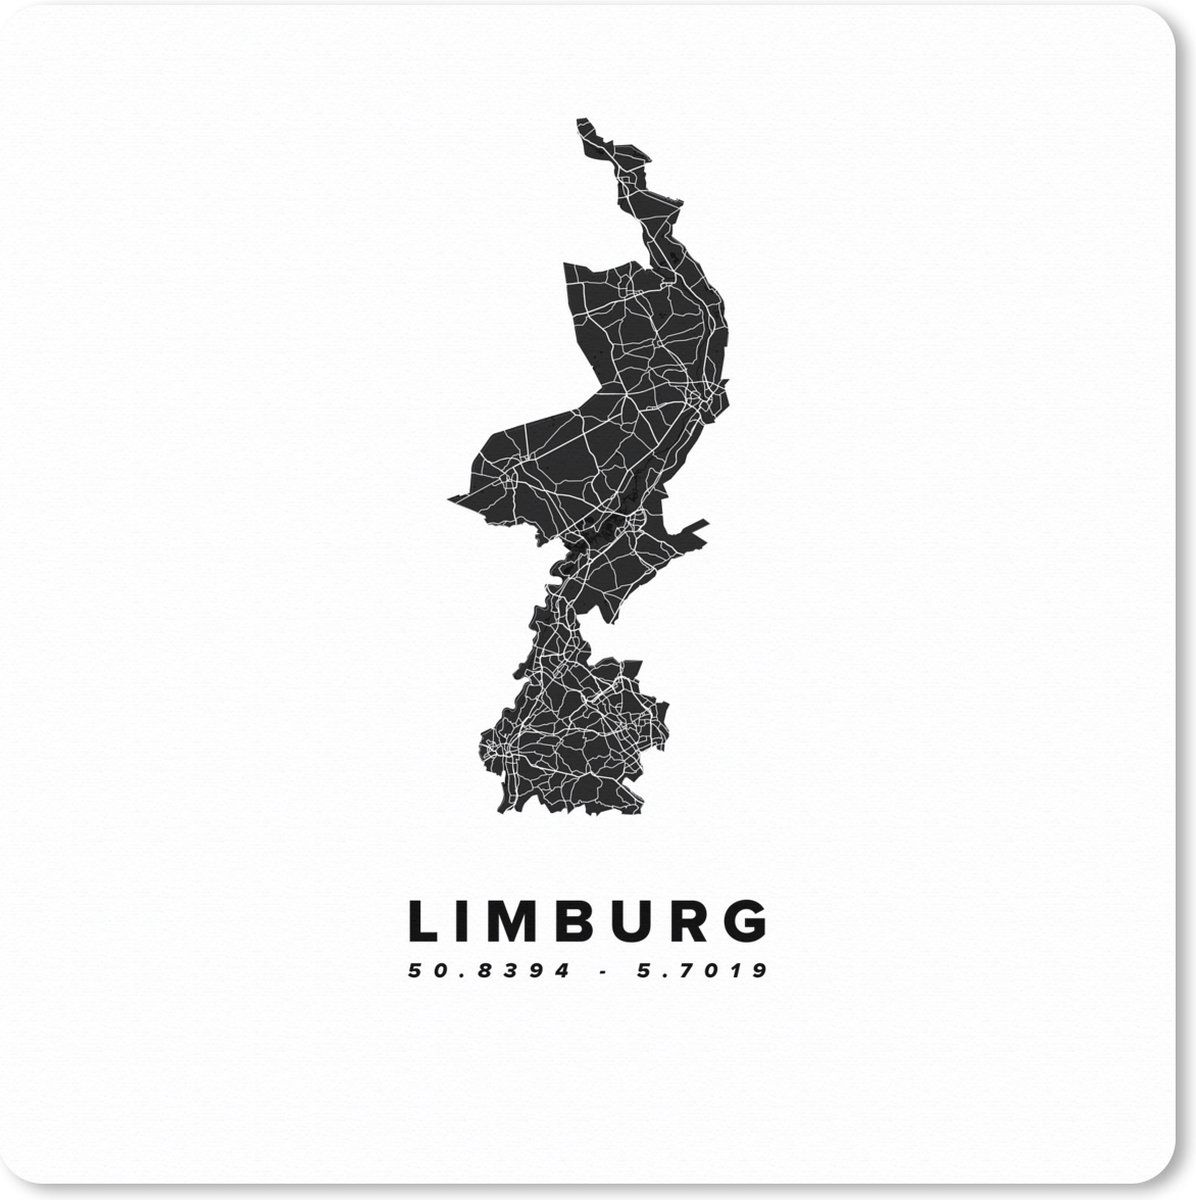 Muismat XXL - Bureau onderlegger - Bureau mat - Limburg - Wegenkaart Nederland - Zwart - Wit - 50x50 cm - XXL muismat